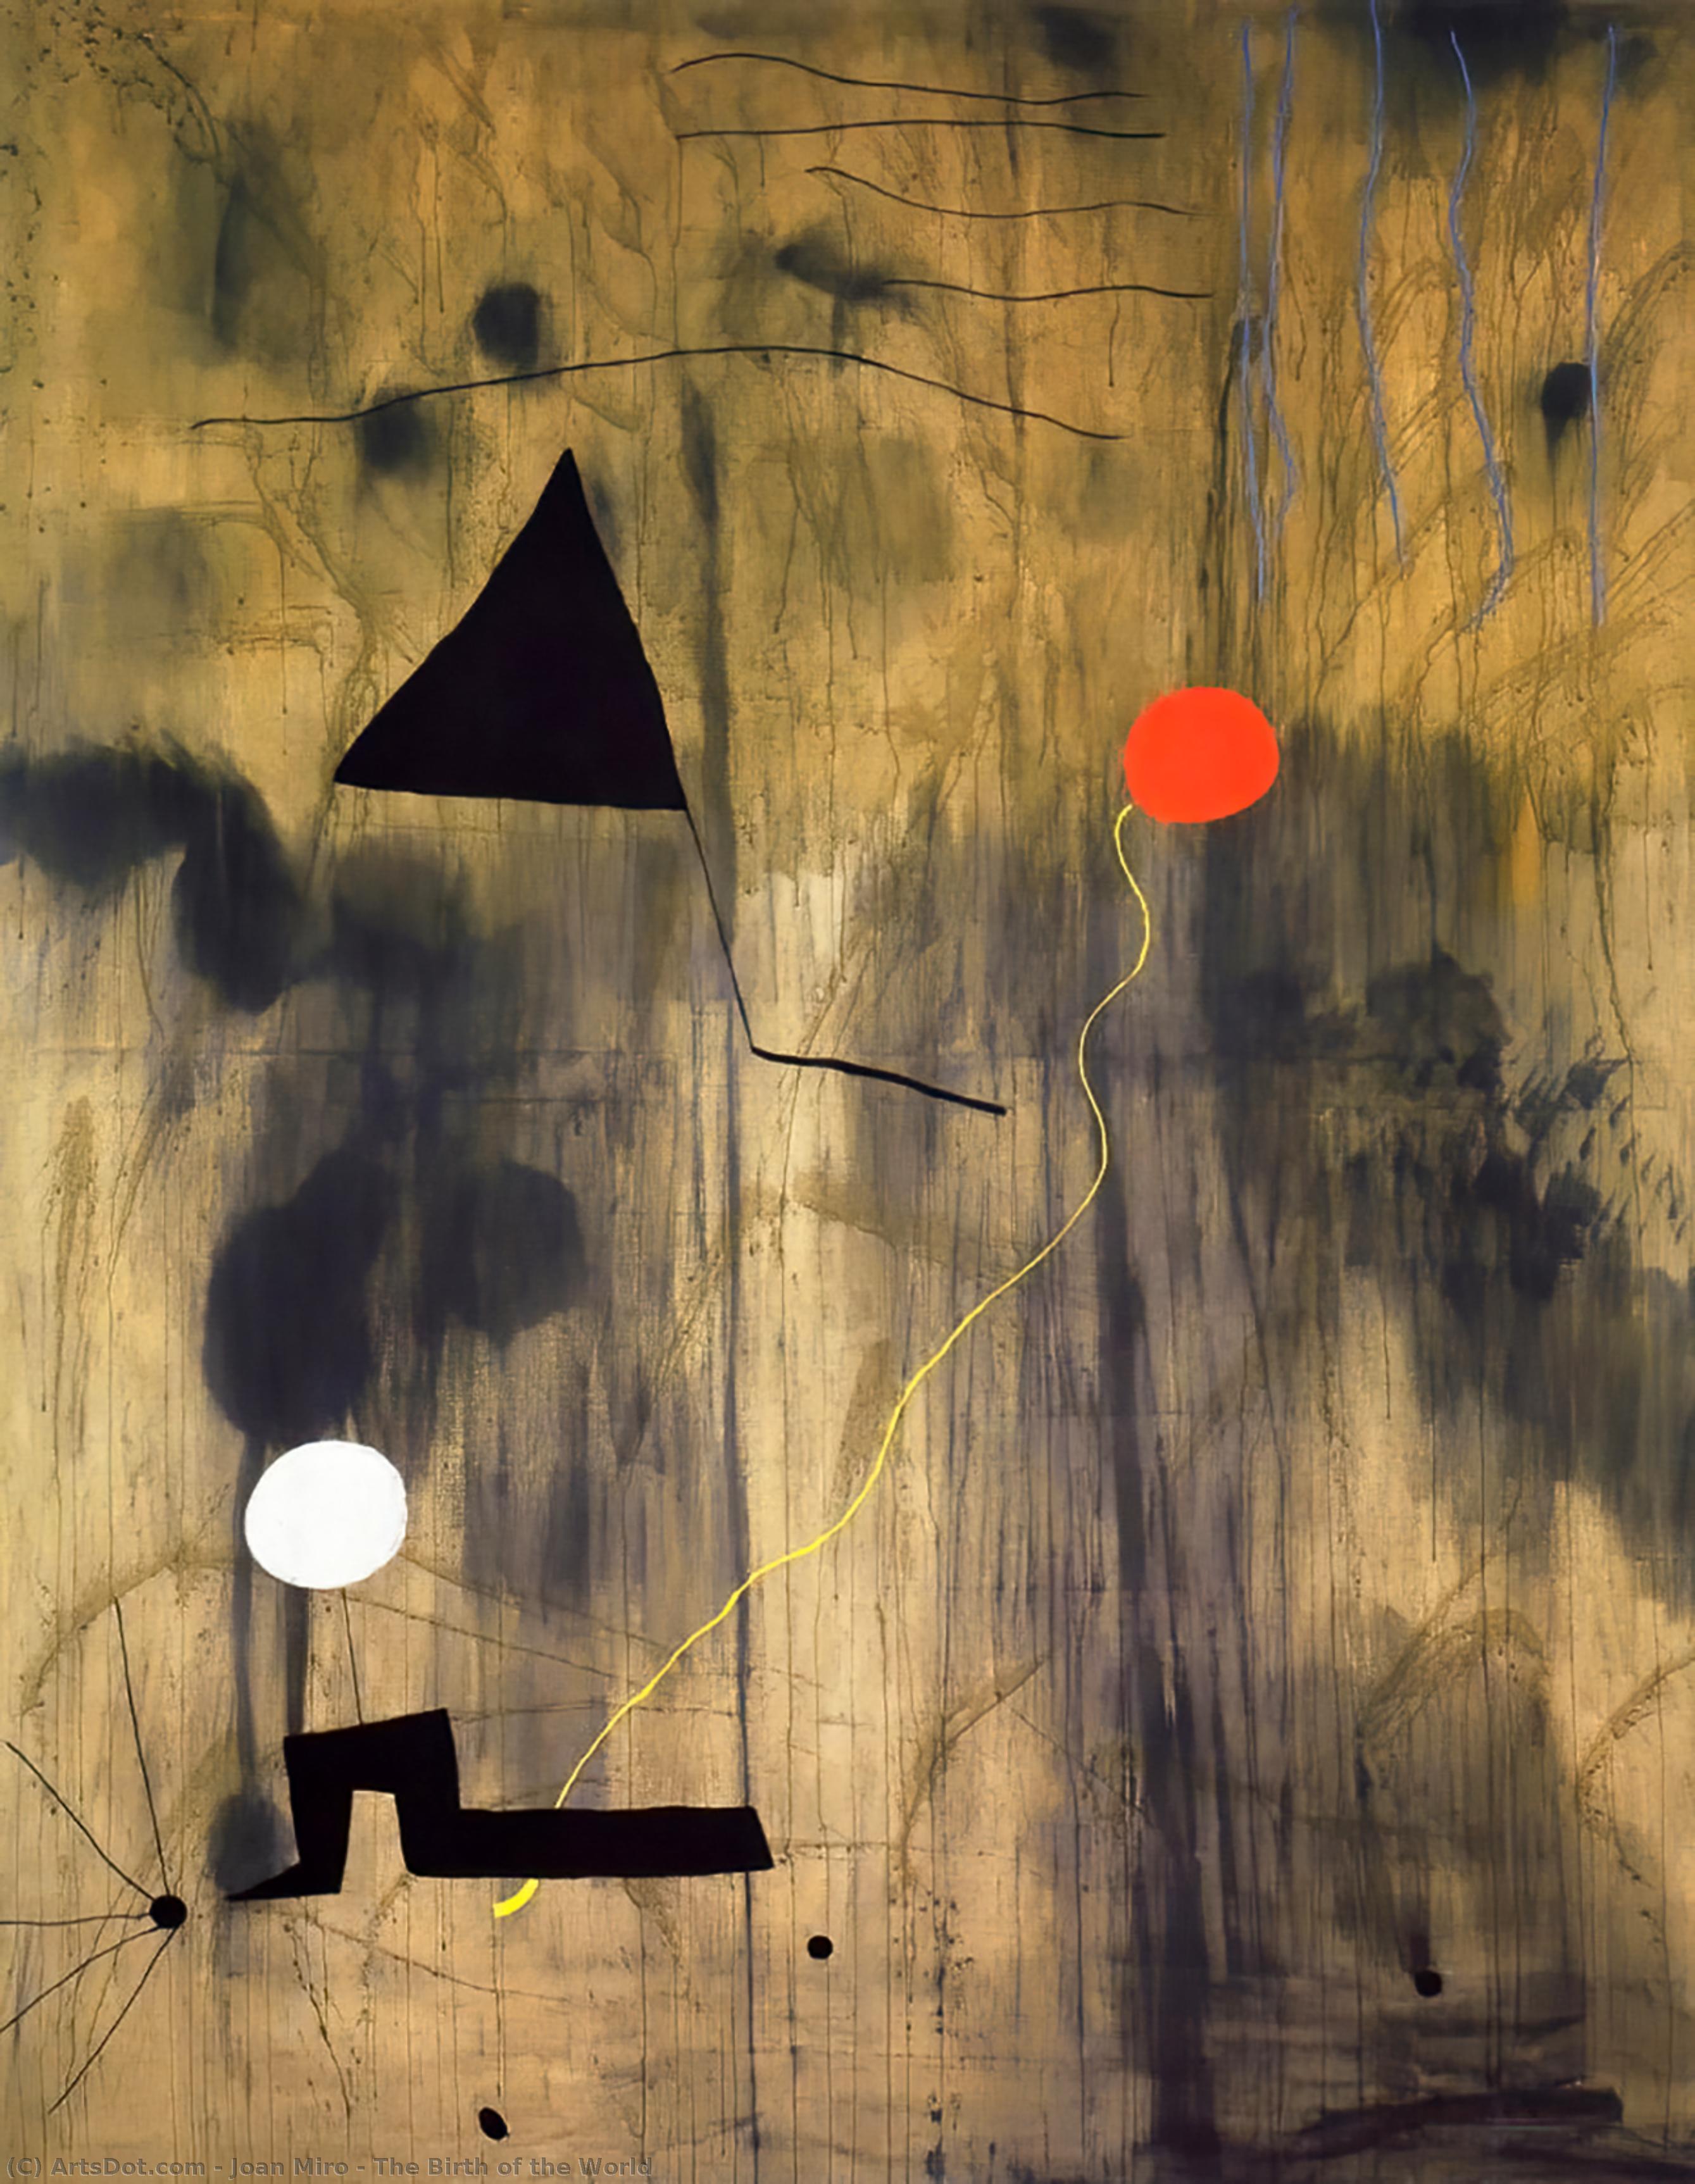 購入 美術館の複製、美術複製、絵画複製、美術館の品質プリント、美術品の複製、有名な絵画の複製、博物館の品質再現、キャンバスにアートプリント 世界の誕生, 1925 バイ Joan Miró (に触発された) (1893-1983, Spain) | ArtsDot.com